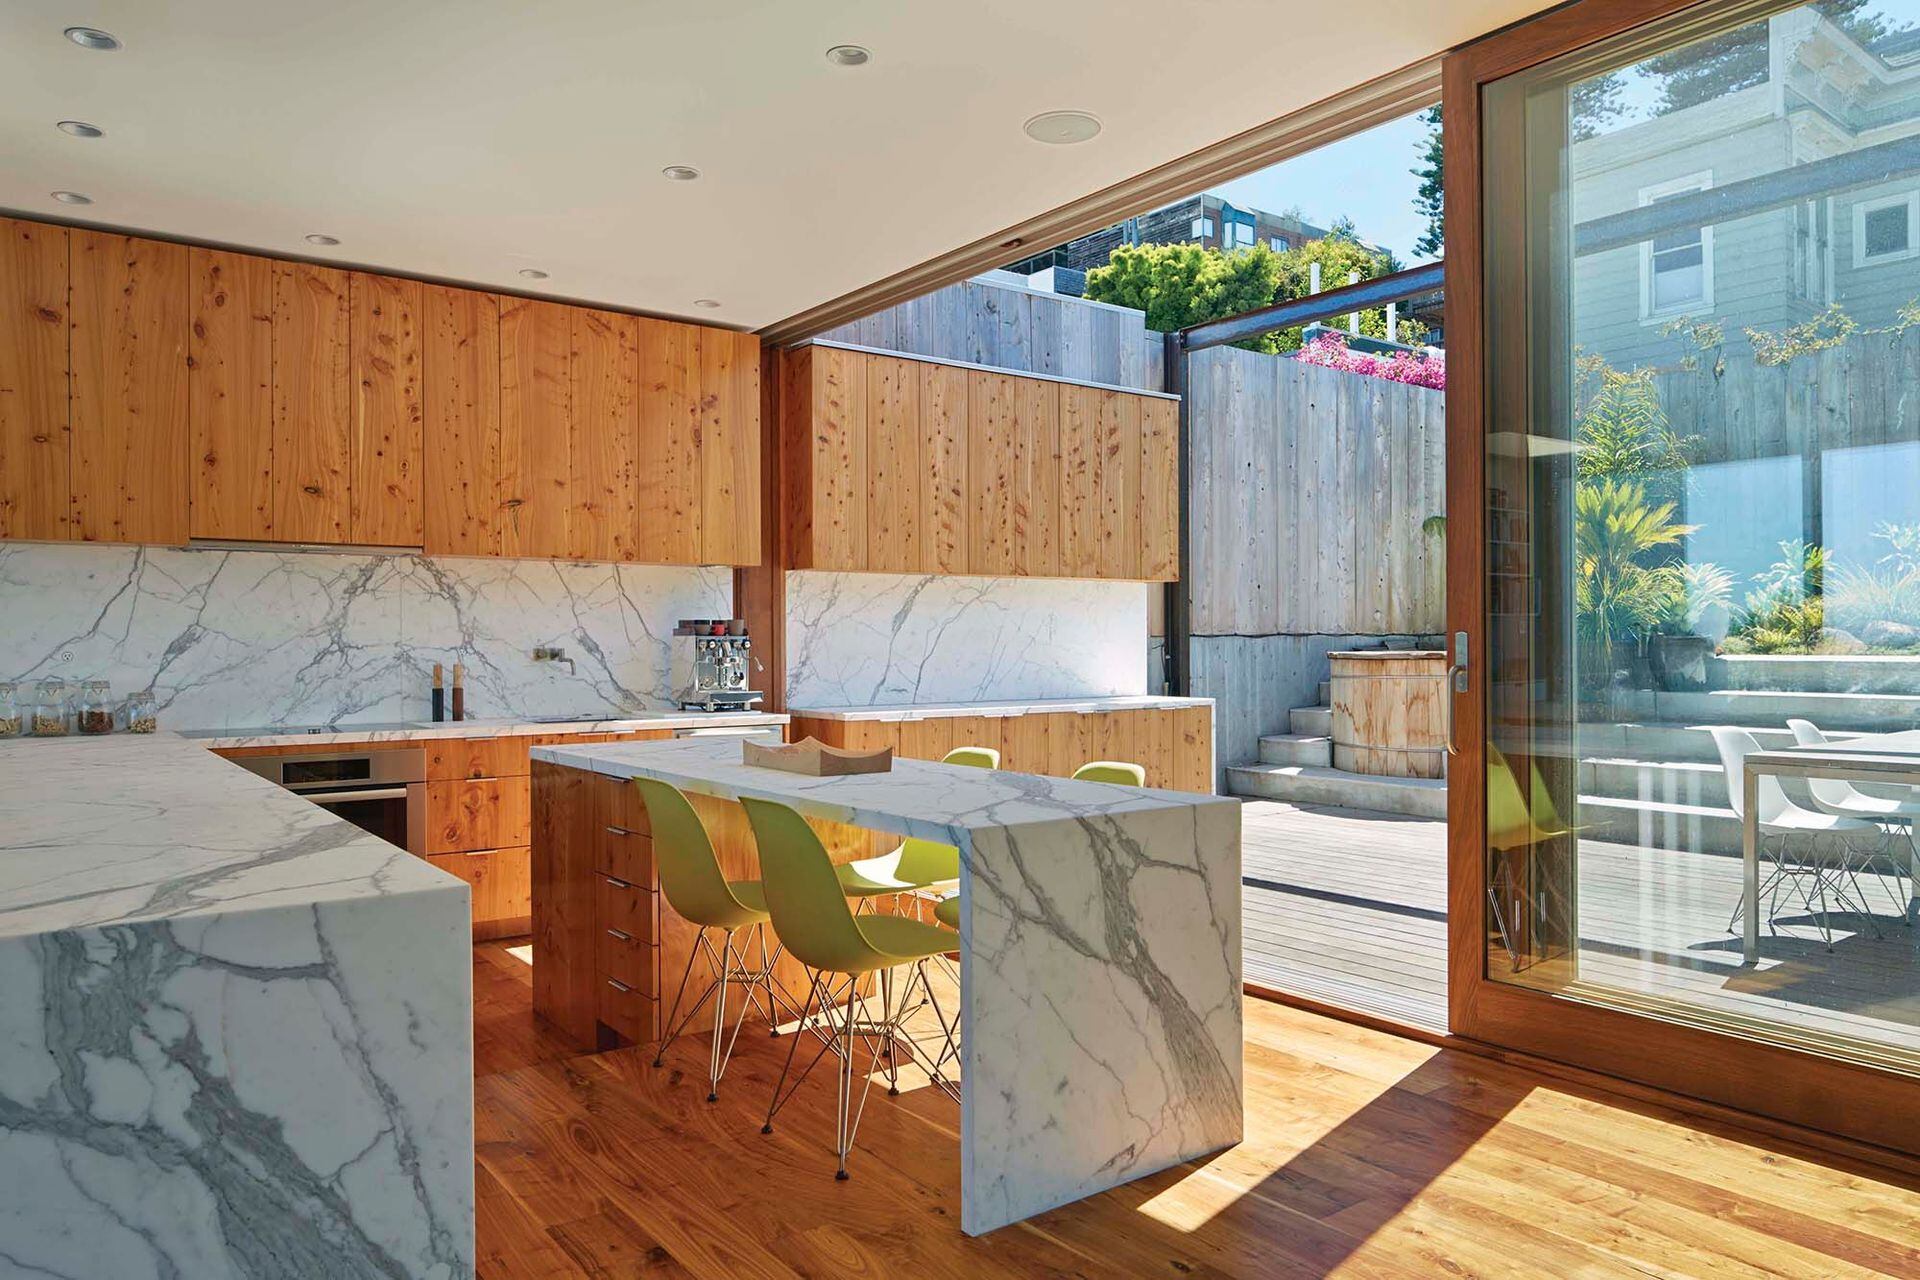 Con un simple movimiento, las puertas corredizas duplican la superficie de la cocina.